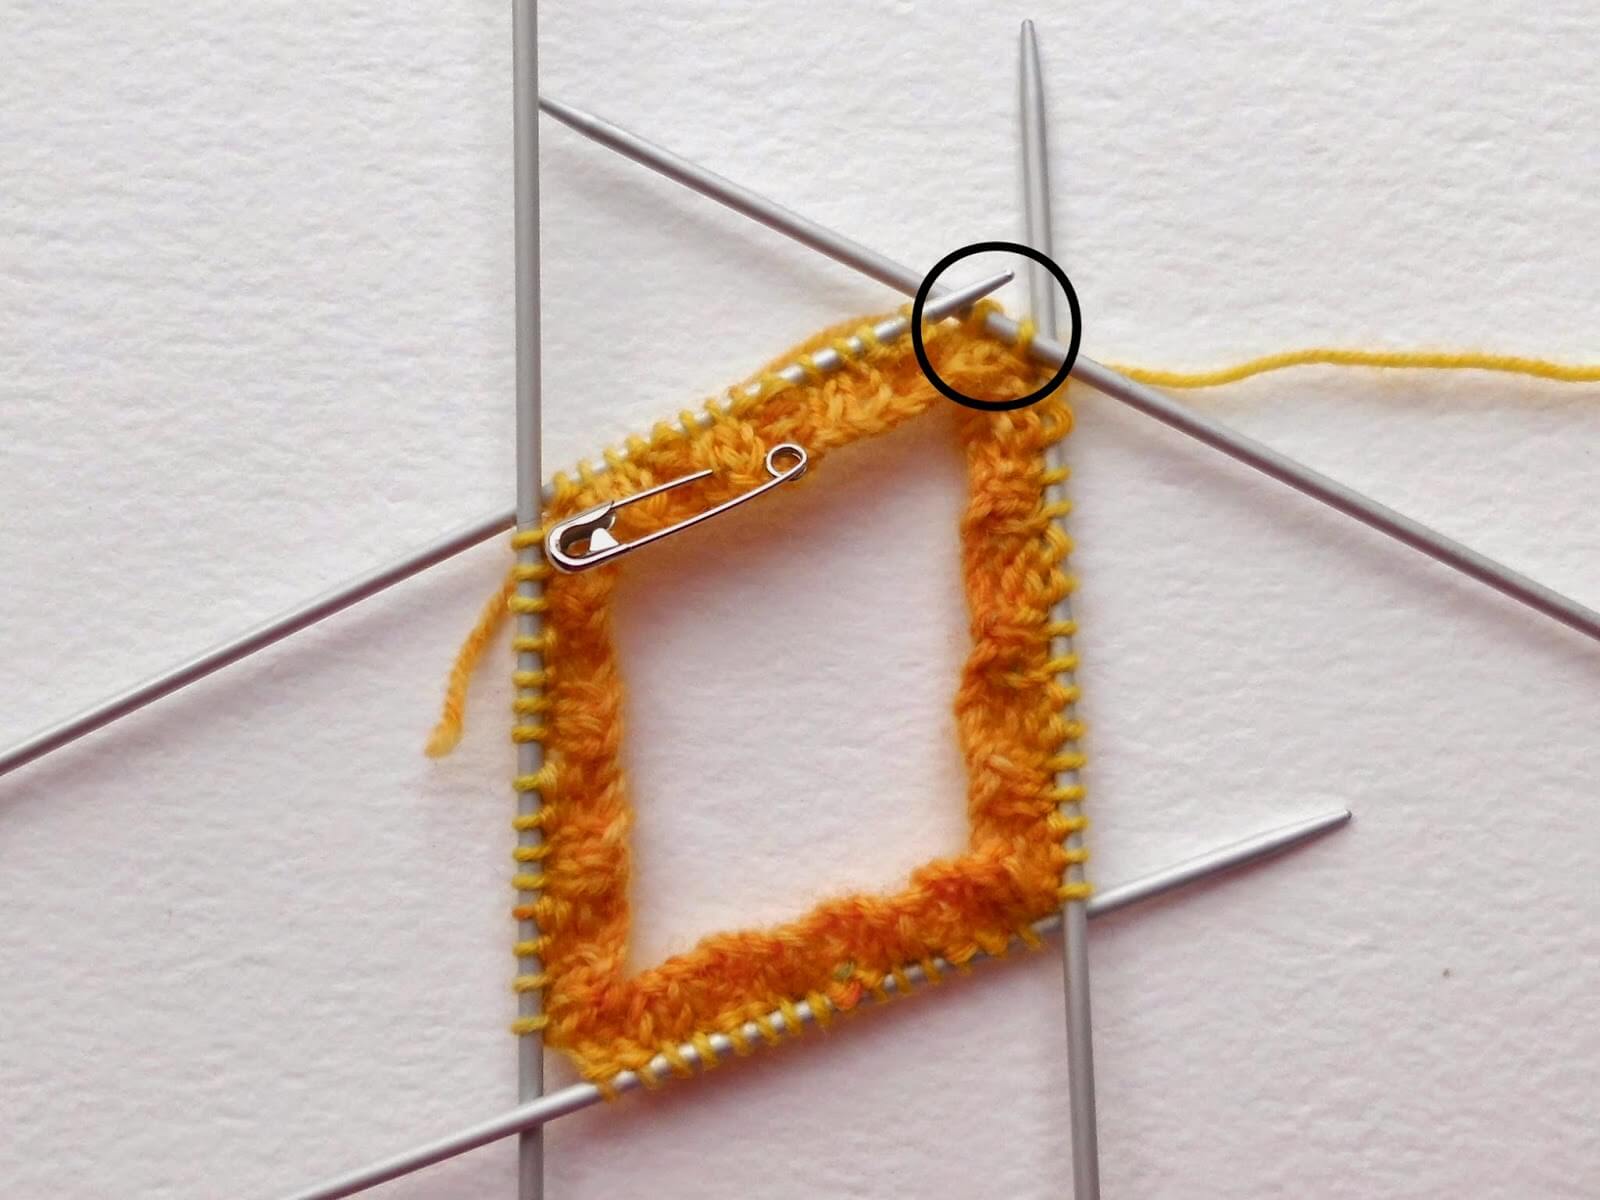 Beginner sock knitting: Sockalong - needles – Winwick Mum